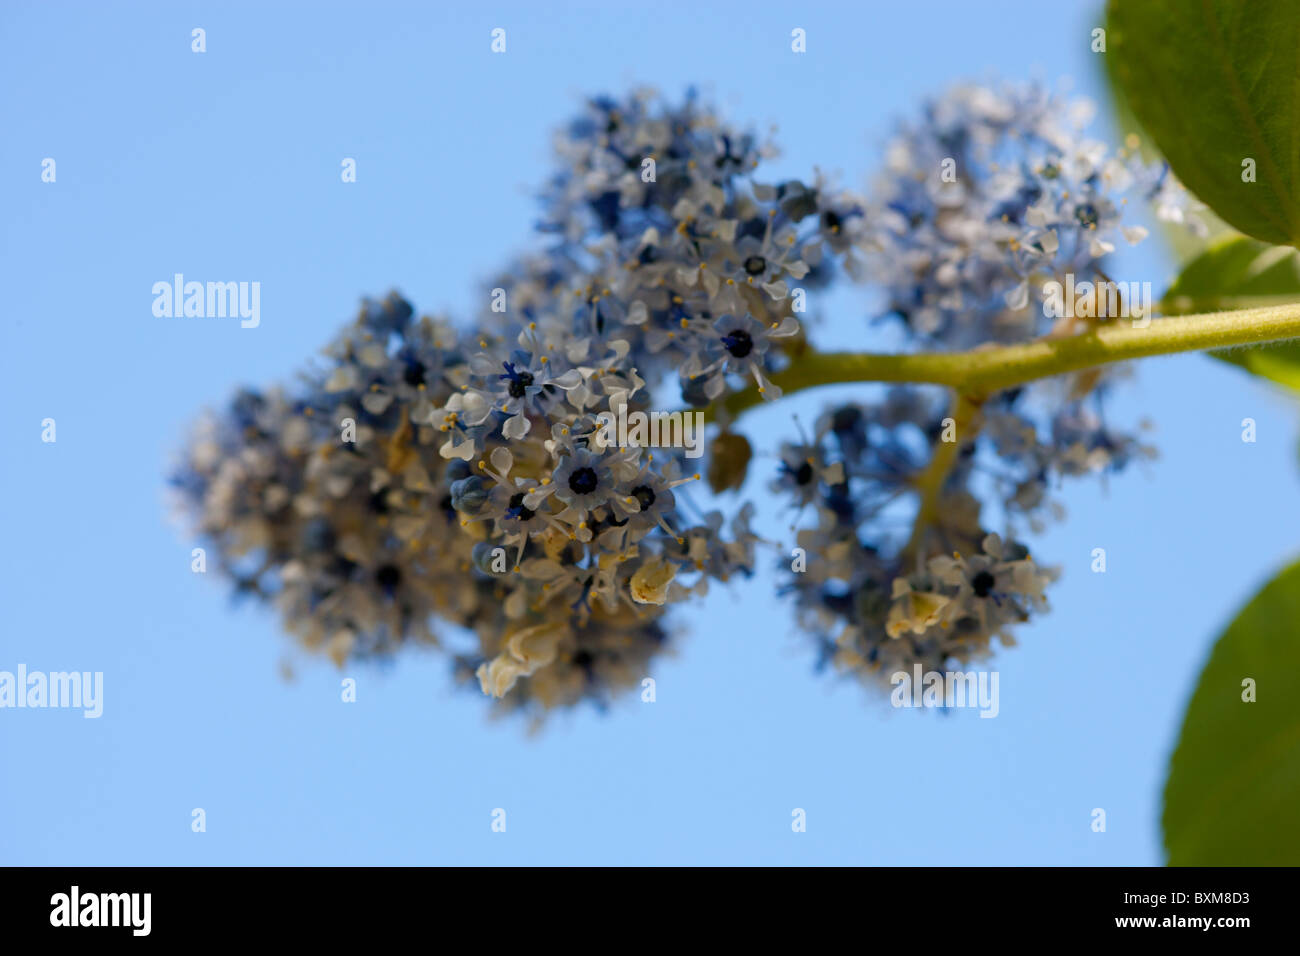 Blue ceanothus flowering shrub Stock Photo